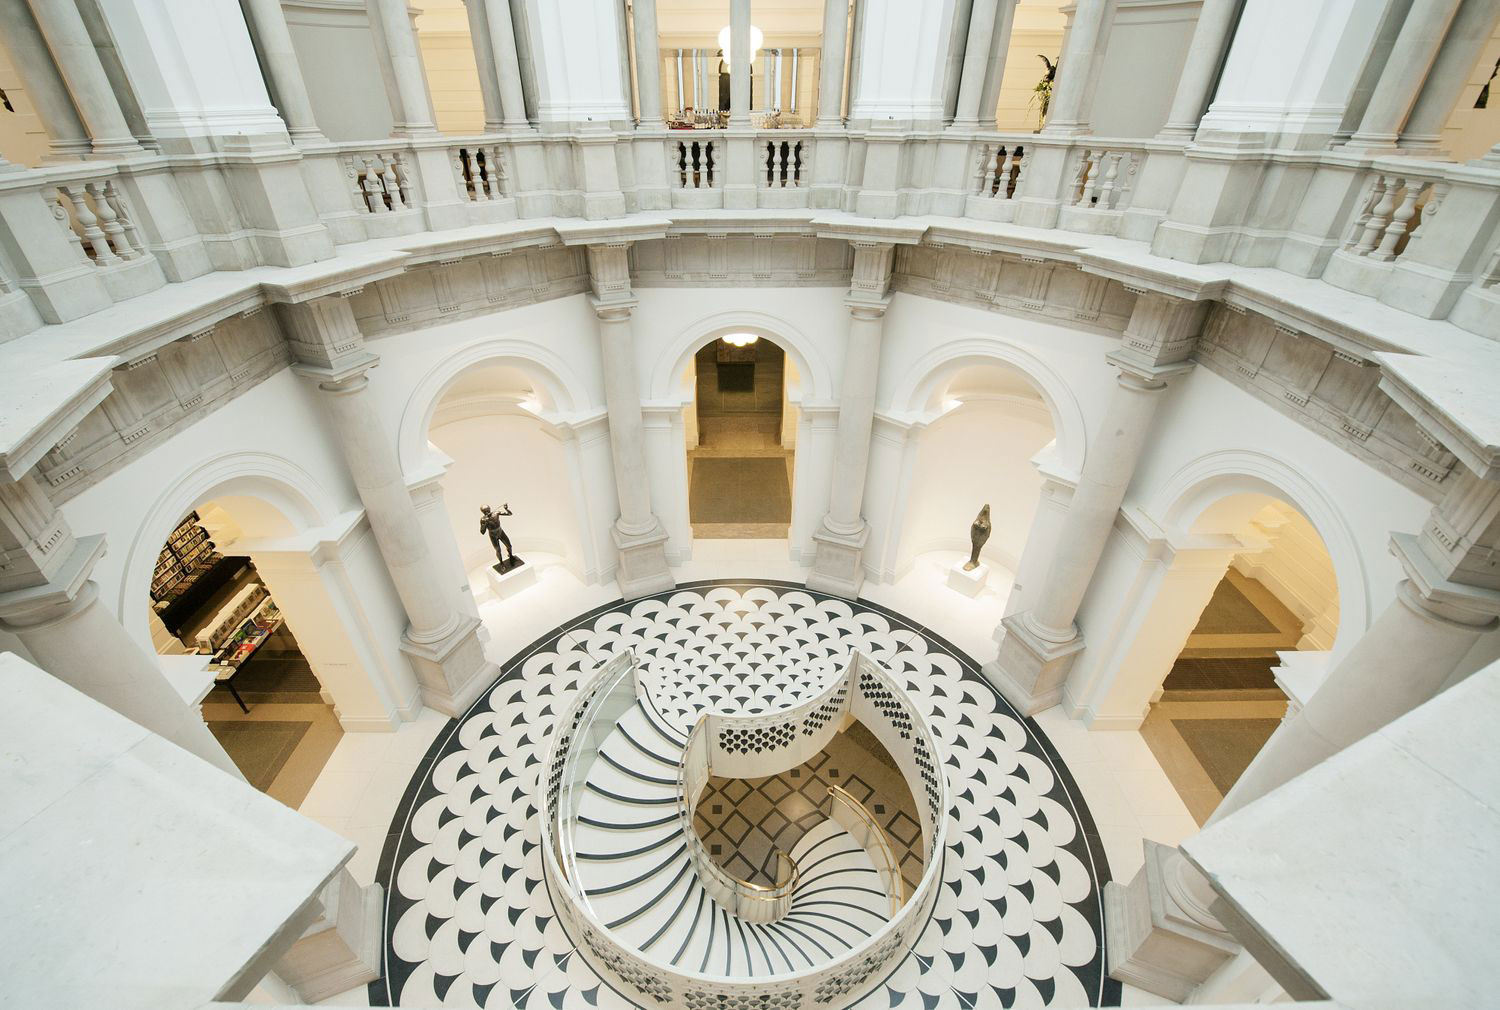 bao tang london tate britain getty images - 15 bảo tàng nổi tiếng bạn nên ghé thăm khi đến London